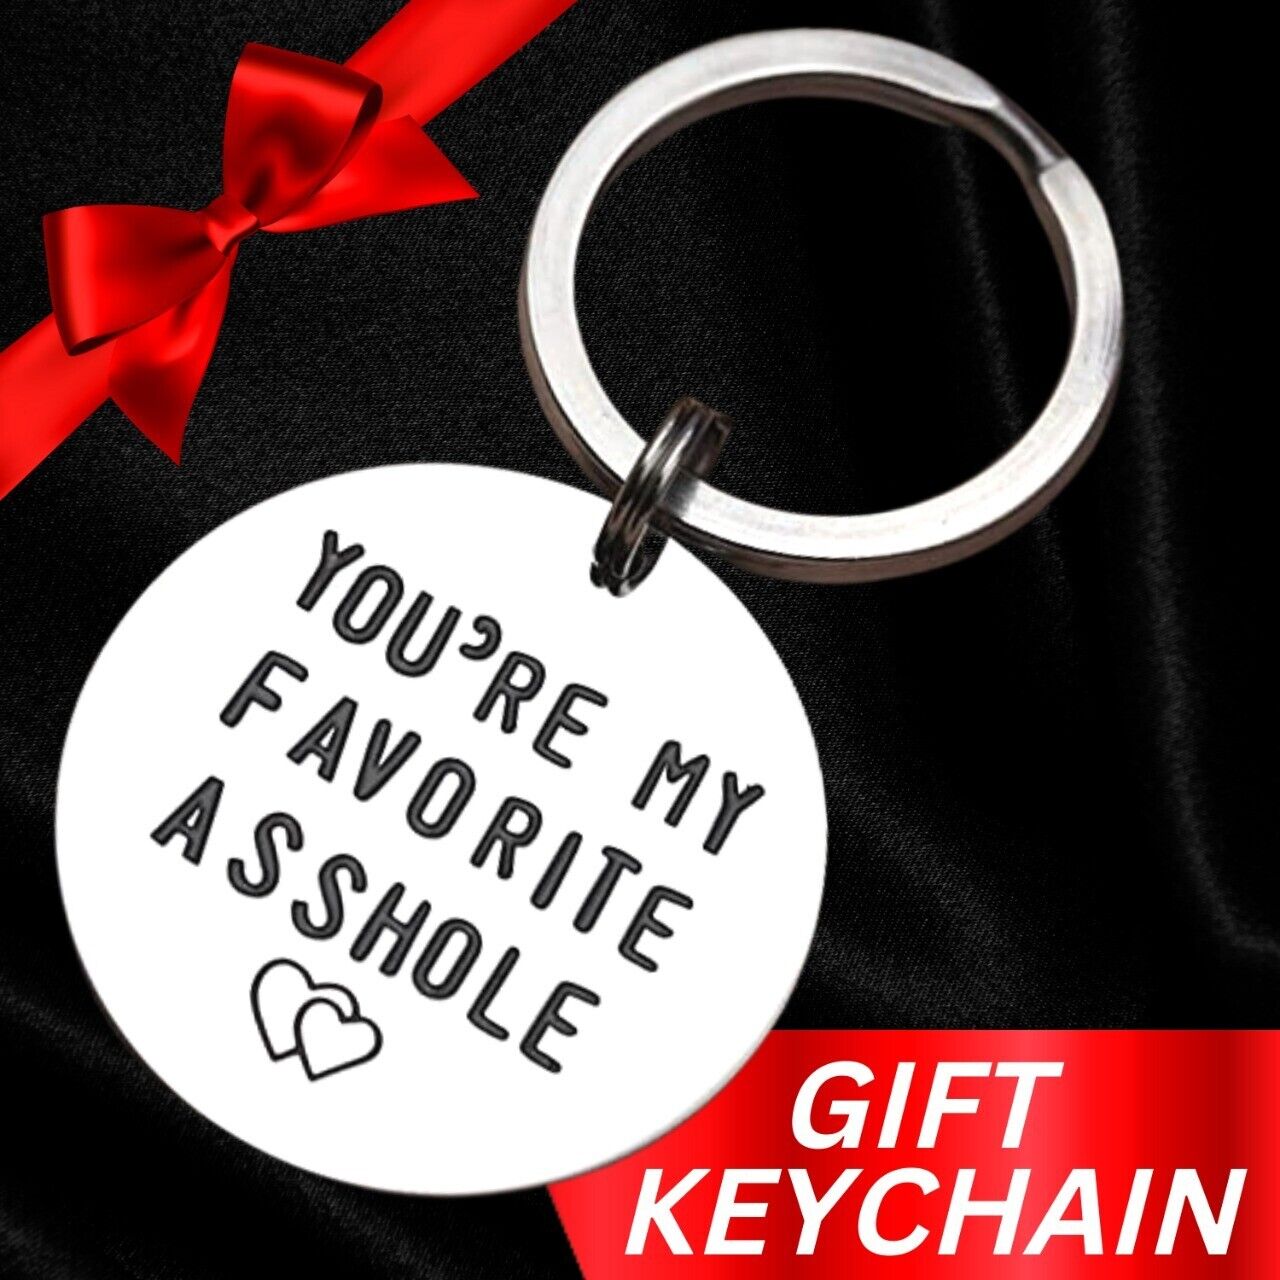 Keychain Novelty Gag Man Gift Valentines Day Funny Gift For Husband Boyfriend